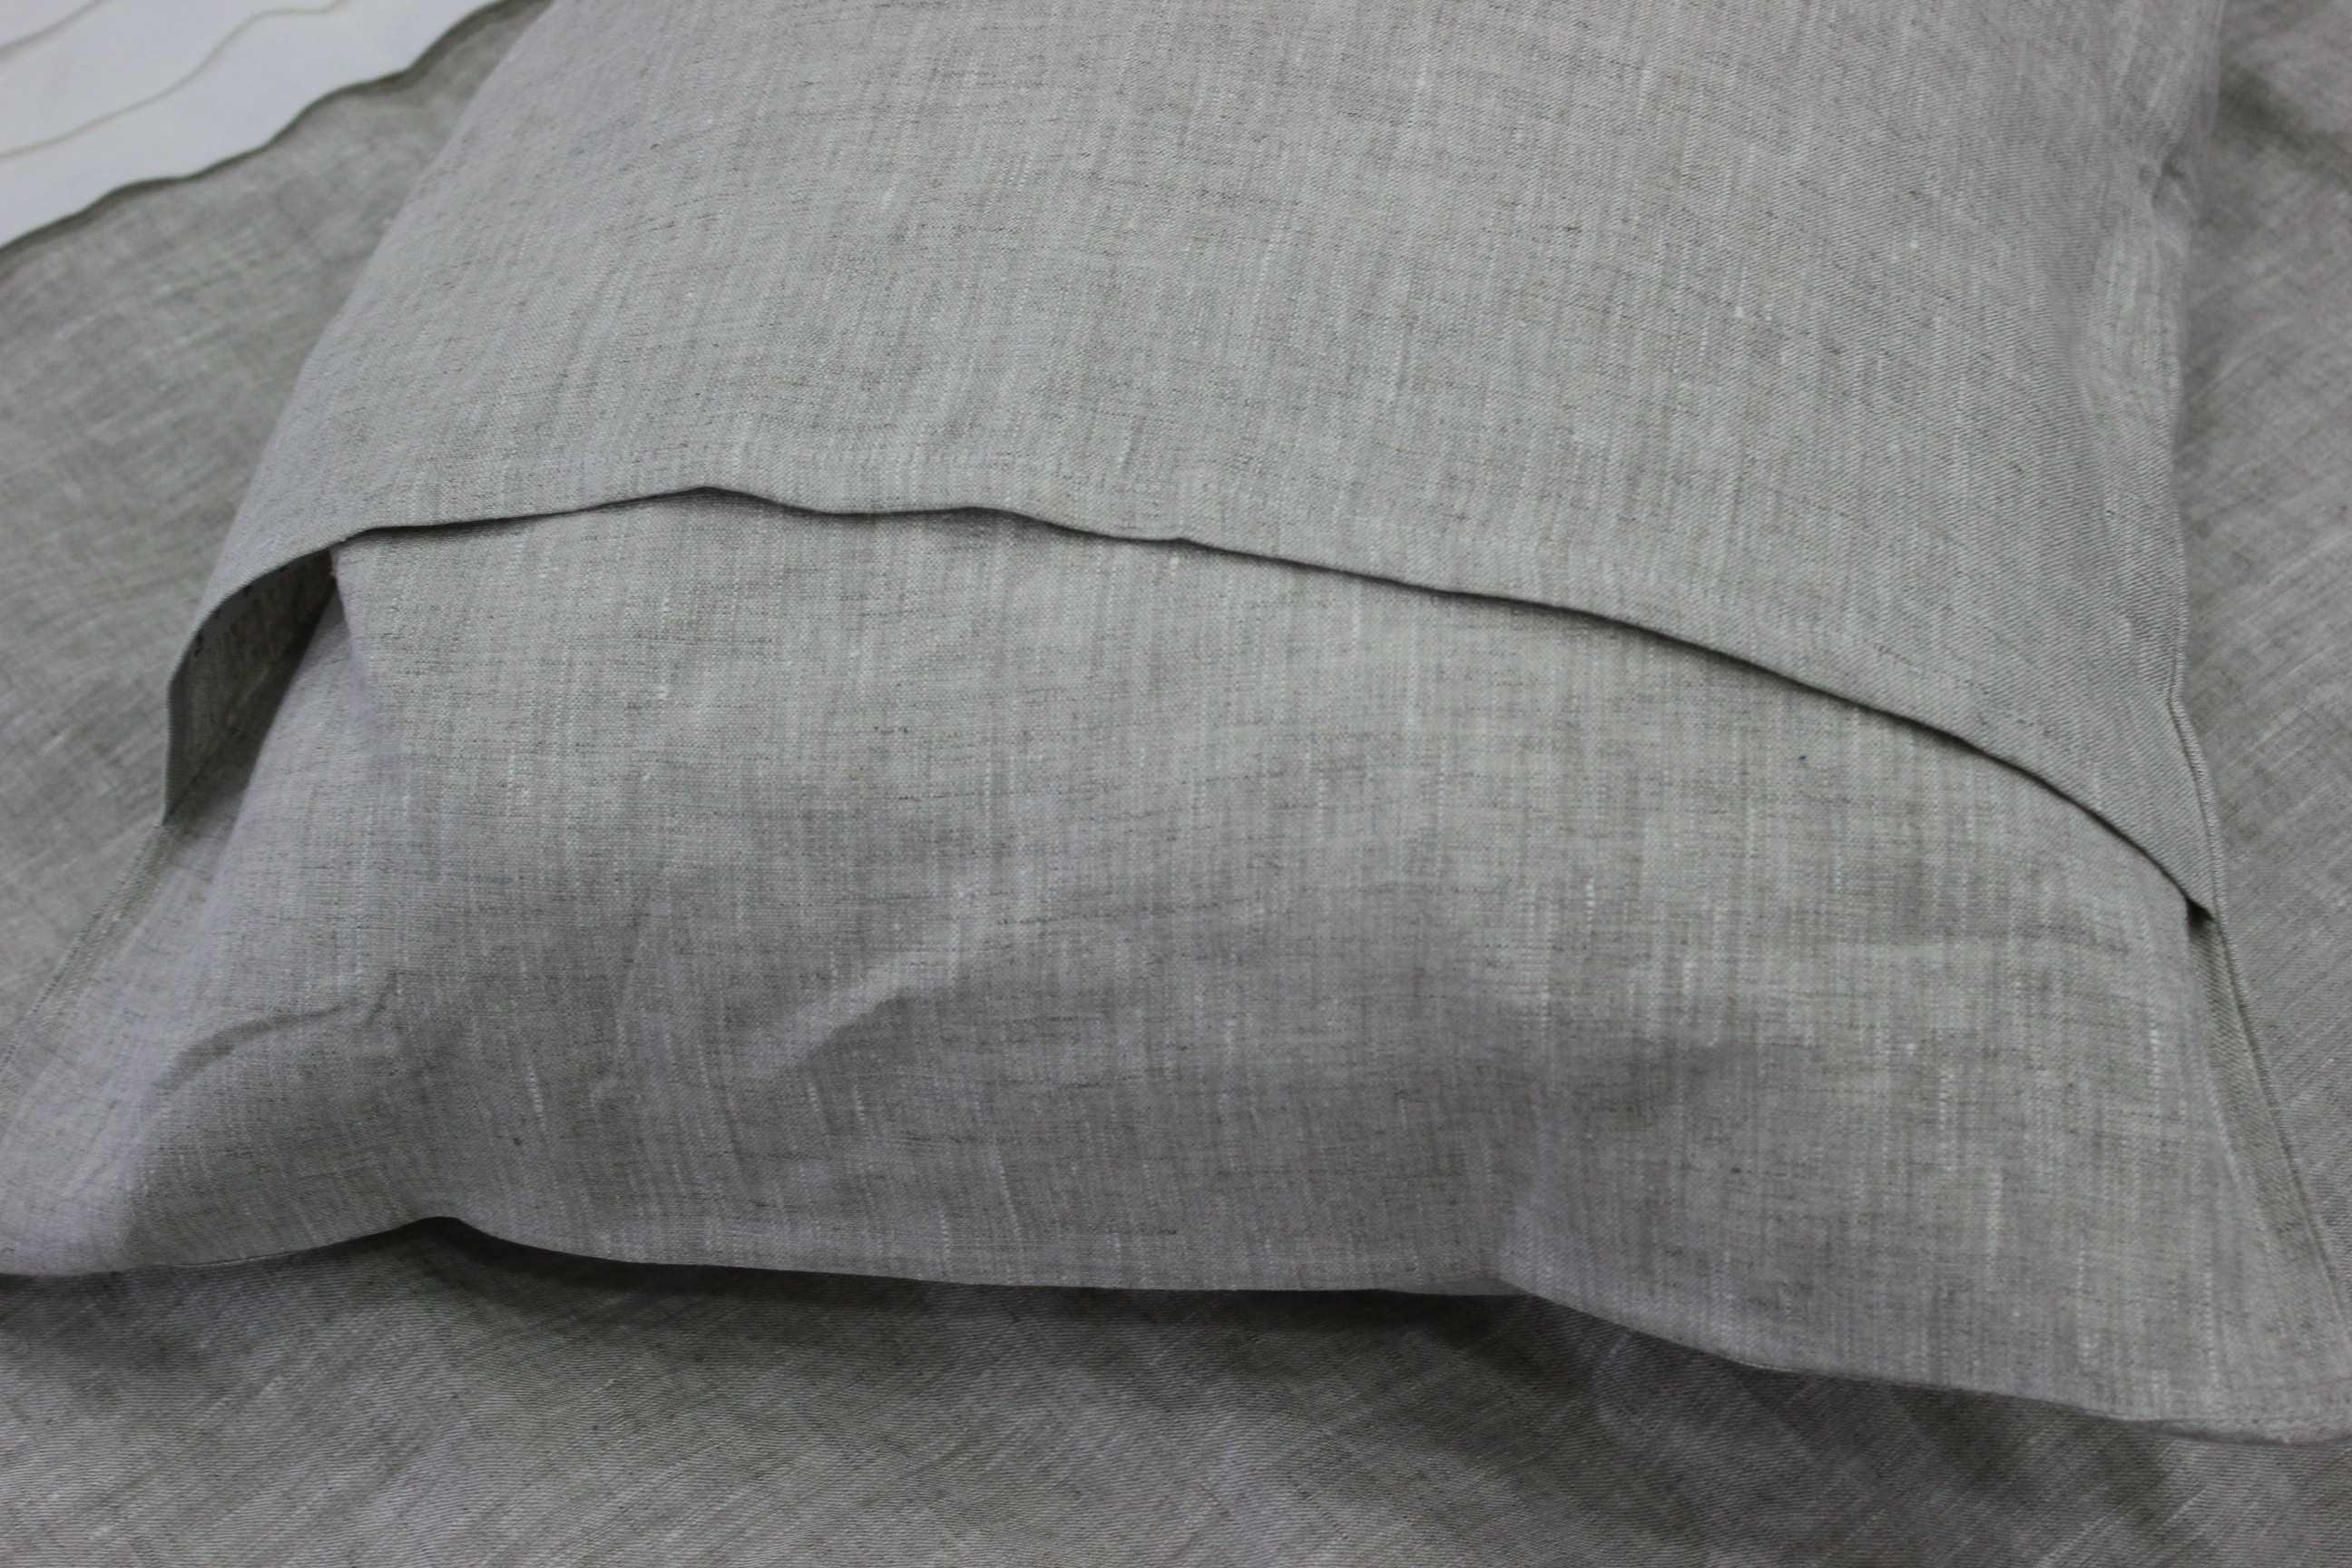 Ткань для подушек: для декоративных на диван, как называется материал